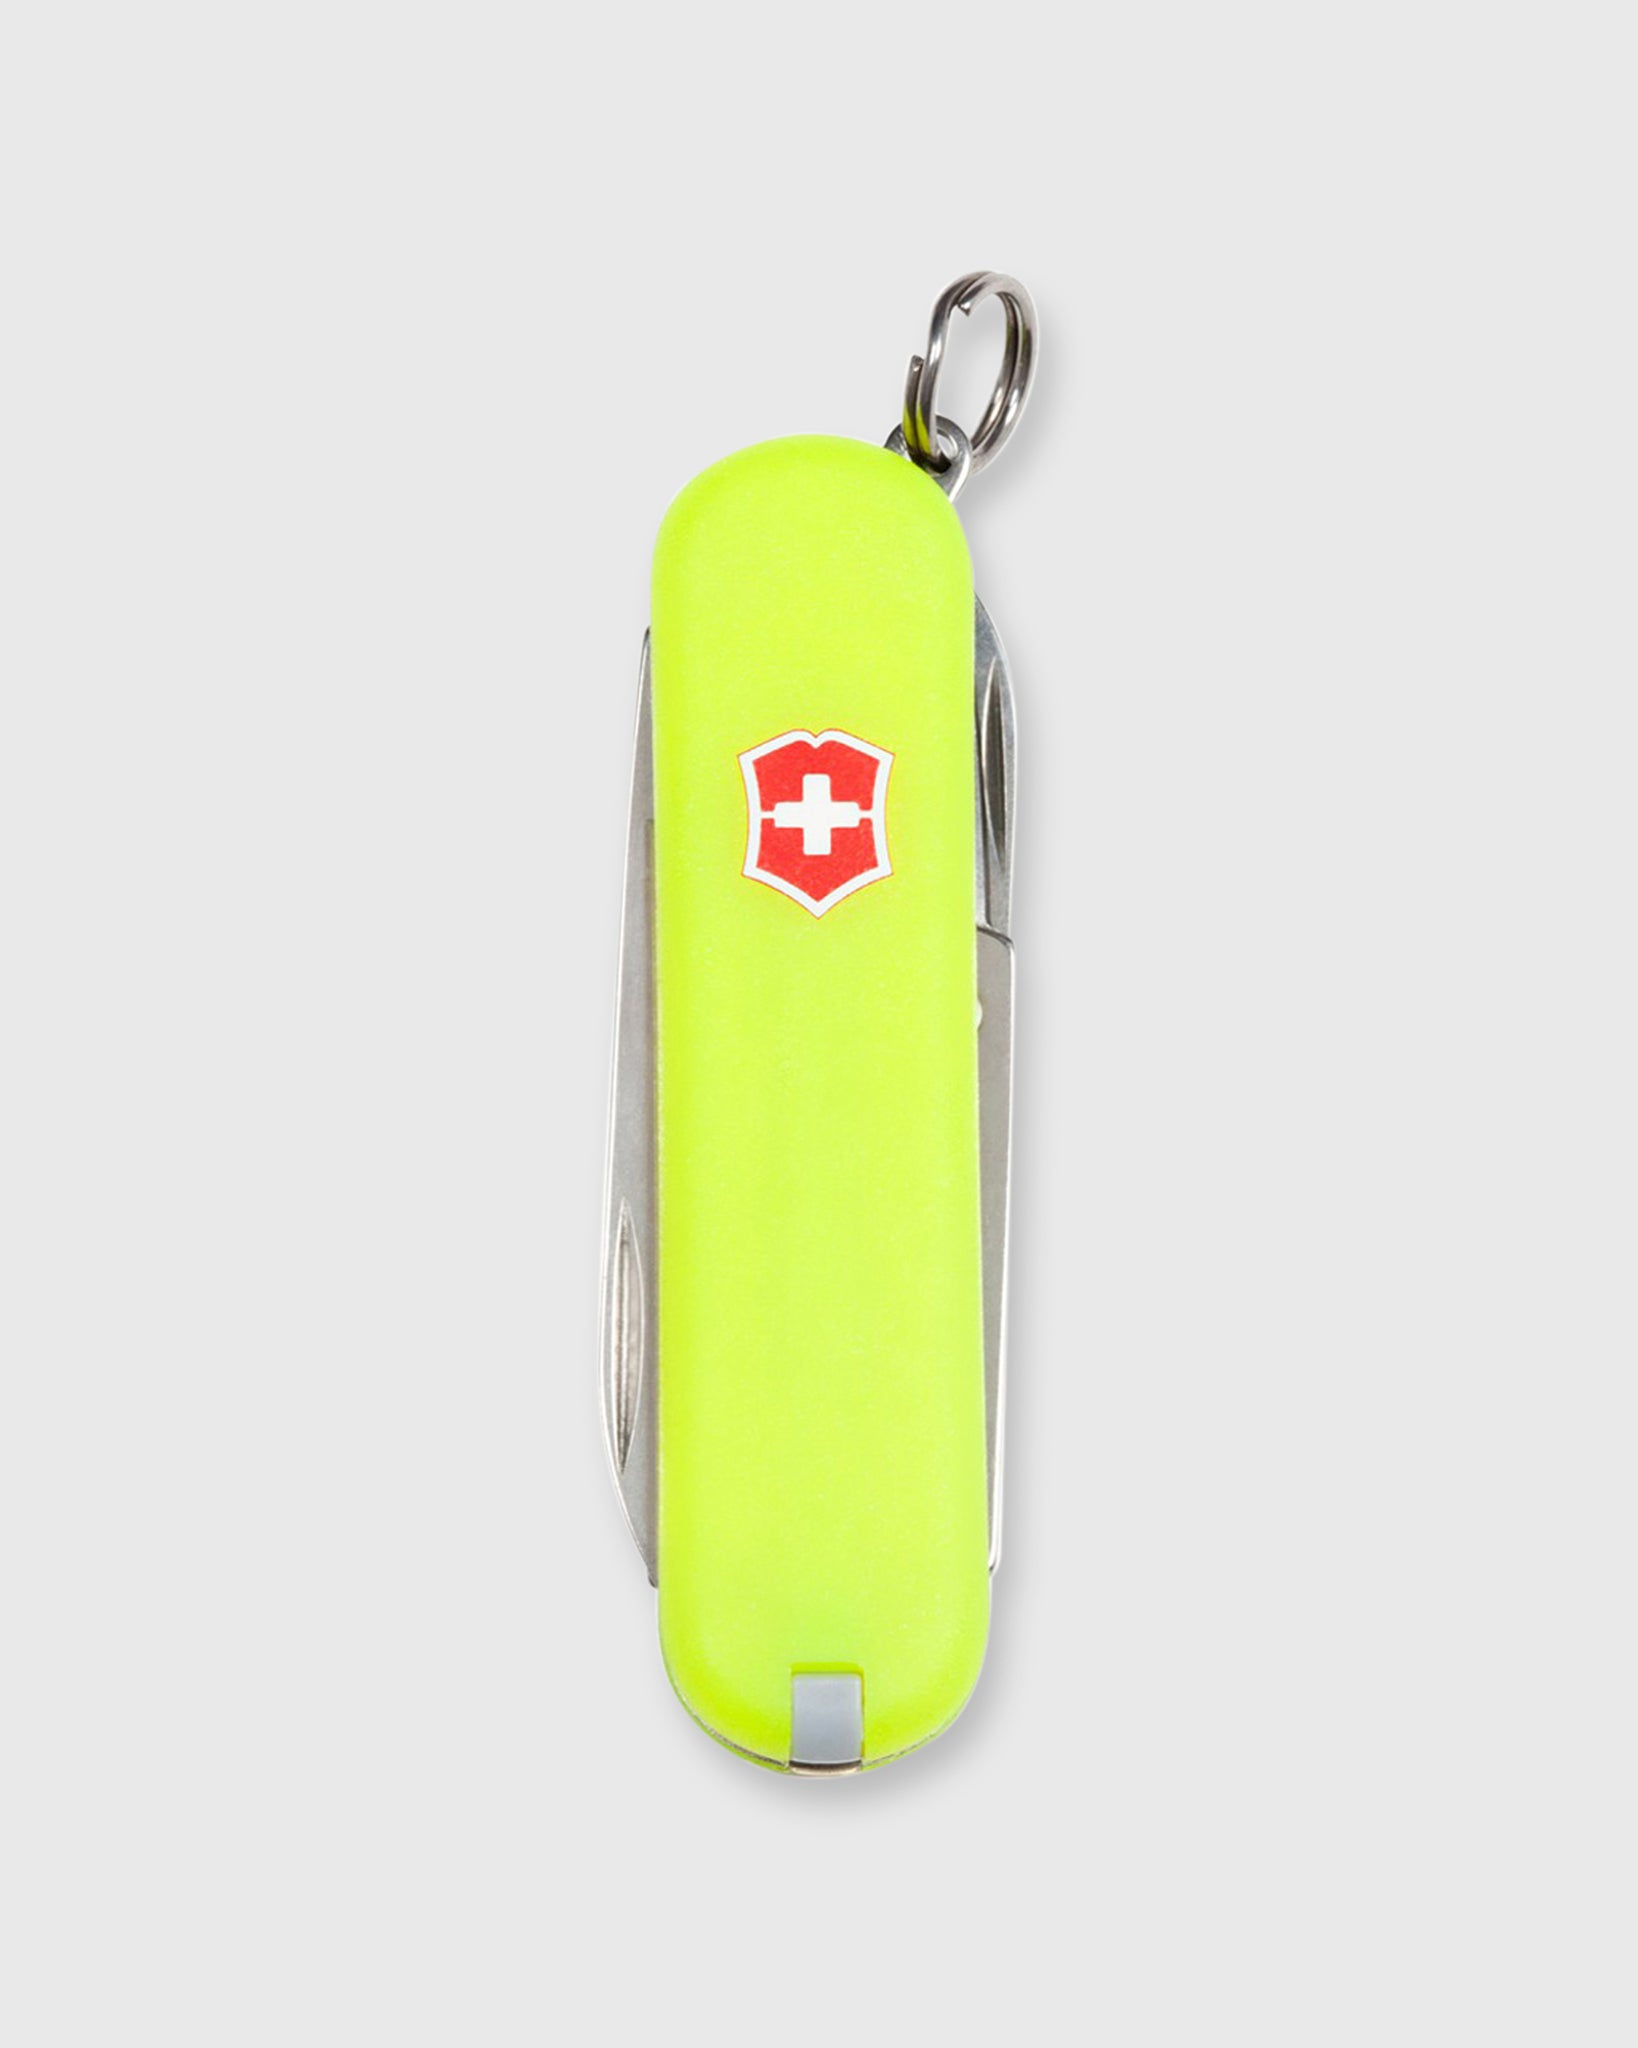 Swiss Army Knife Stay-glo